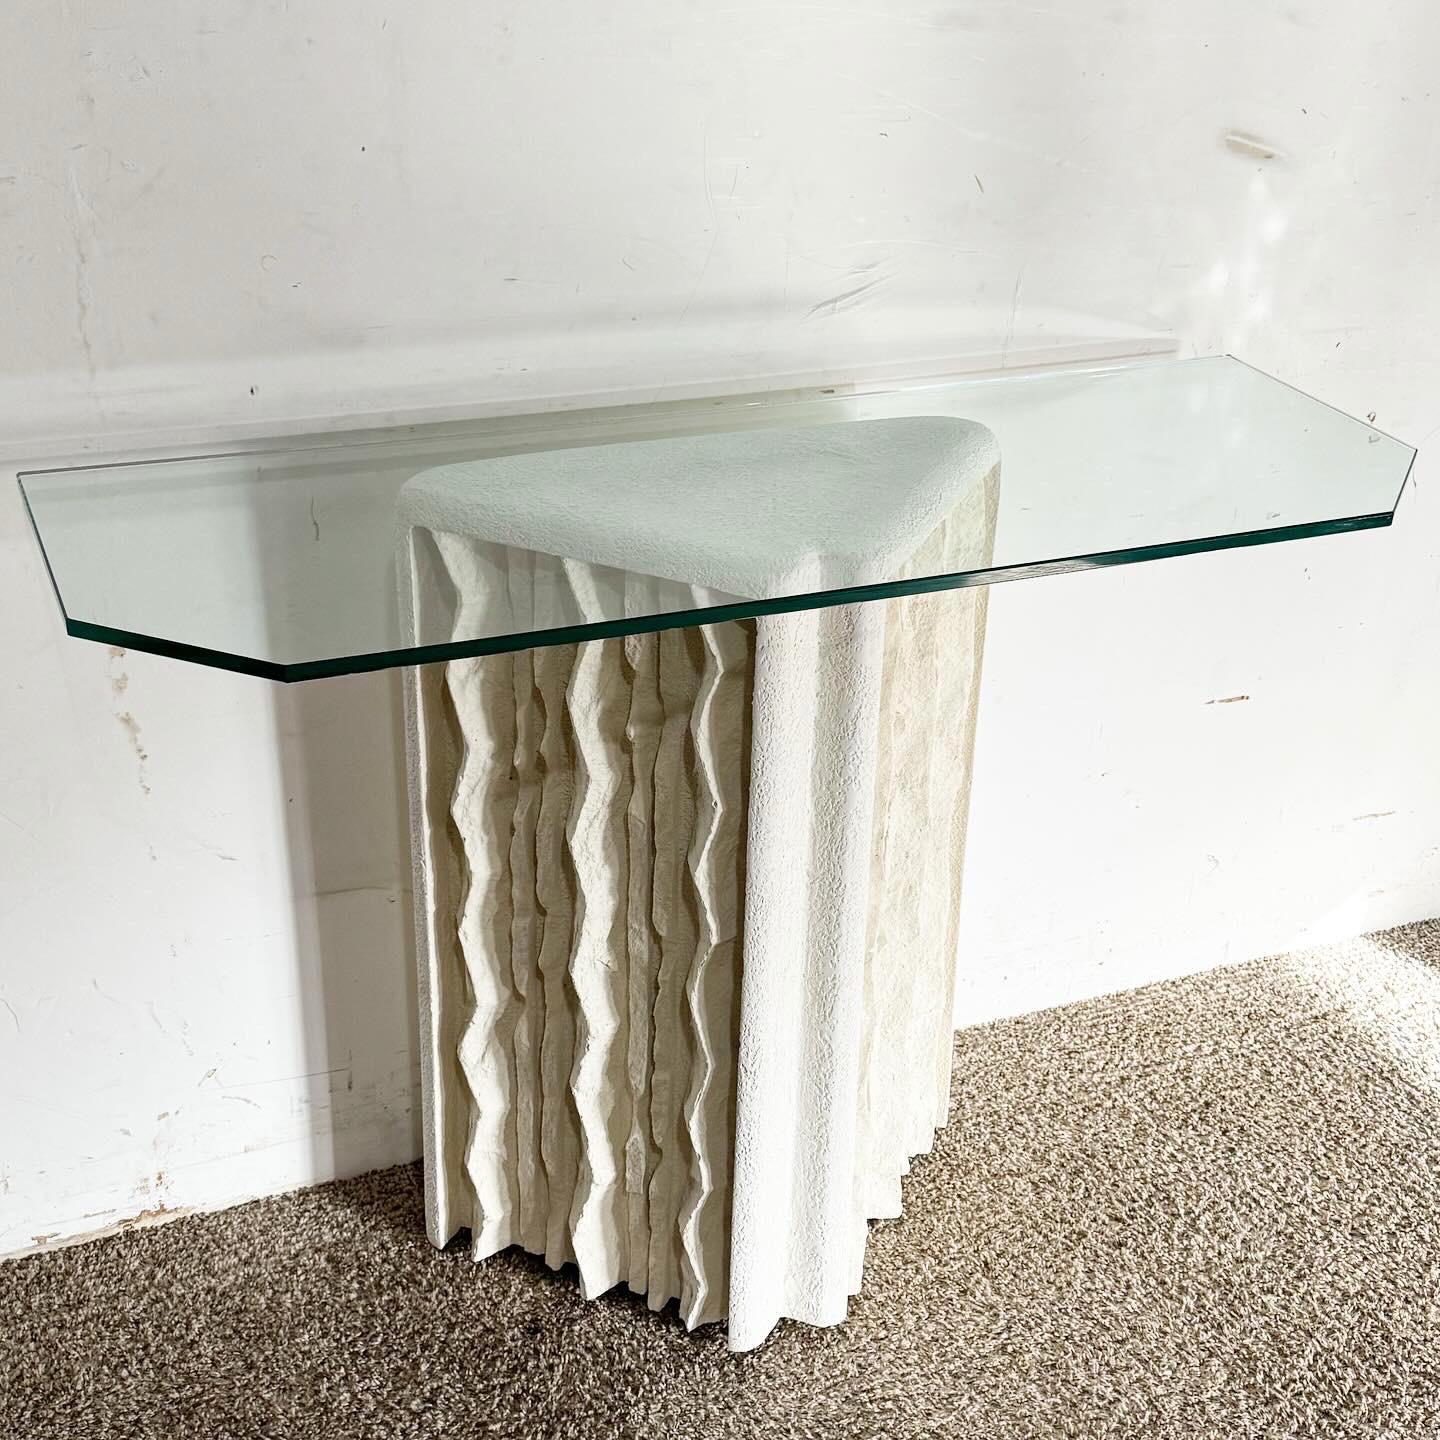 Erleben Sie die Unverwechselbarkeit der Postmoderne mit dem Cast Plaster Glass Top Console Table. Dieser Tisch verfügt über einen einzigartig gestalteten Gipssockel mit den Maßen 20,5 B, 10 T und 29 H, der eine glatte Glasplatte trägt. Die